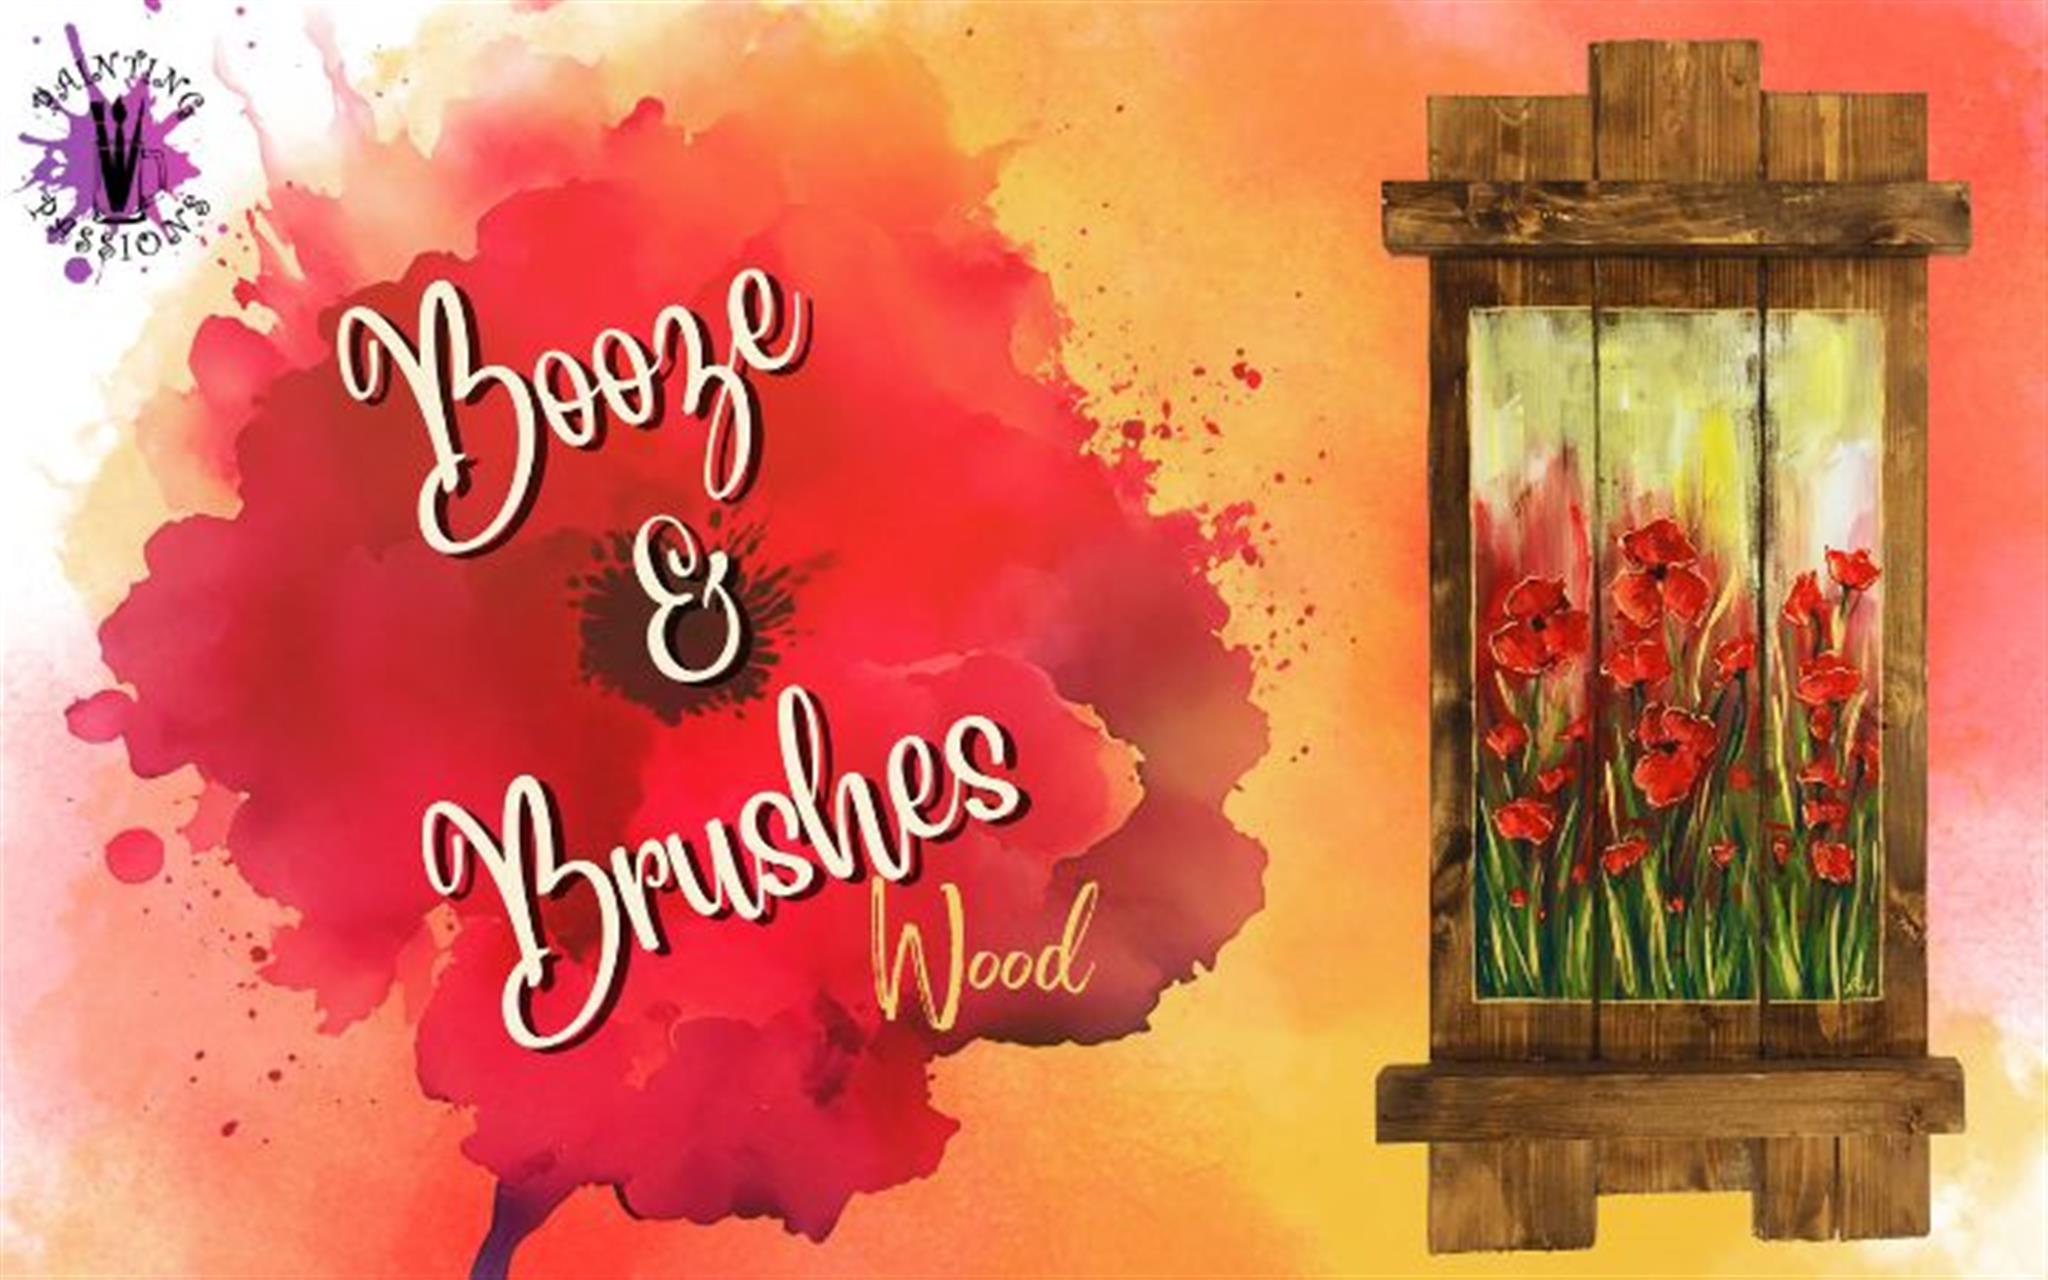  Booze & Brushes  Poppy Wood Pallet image